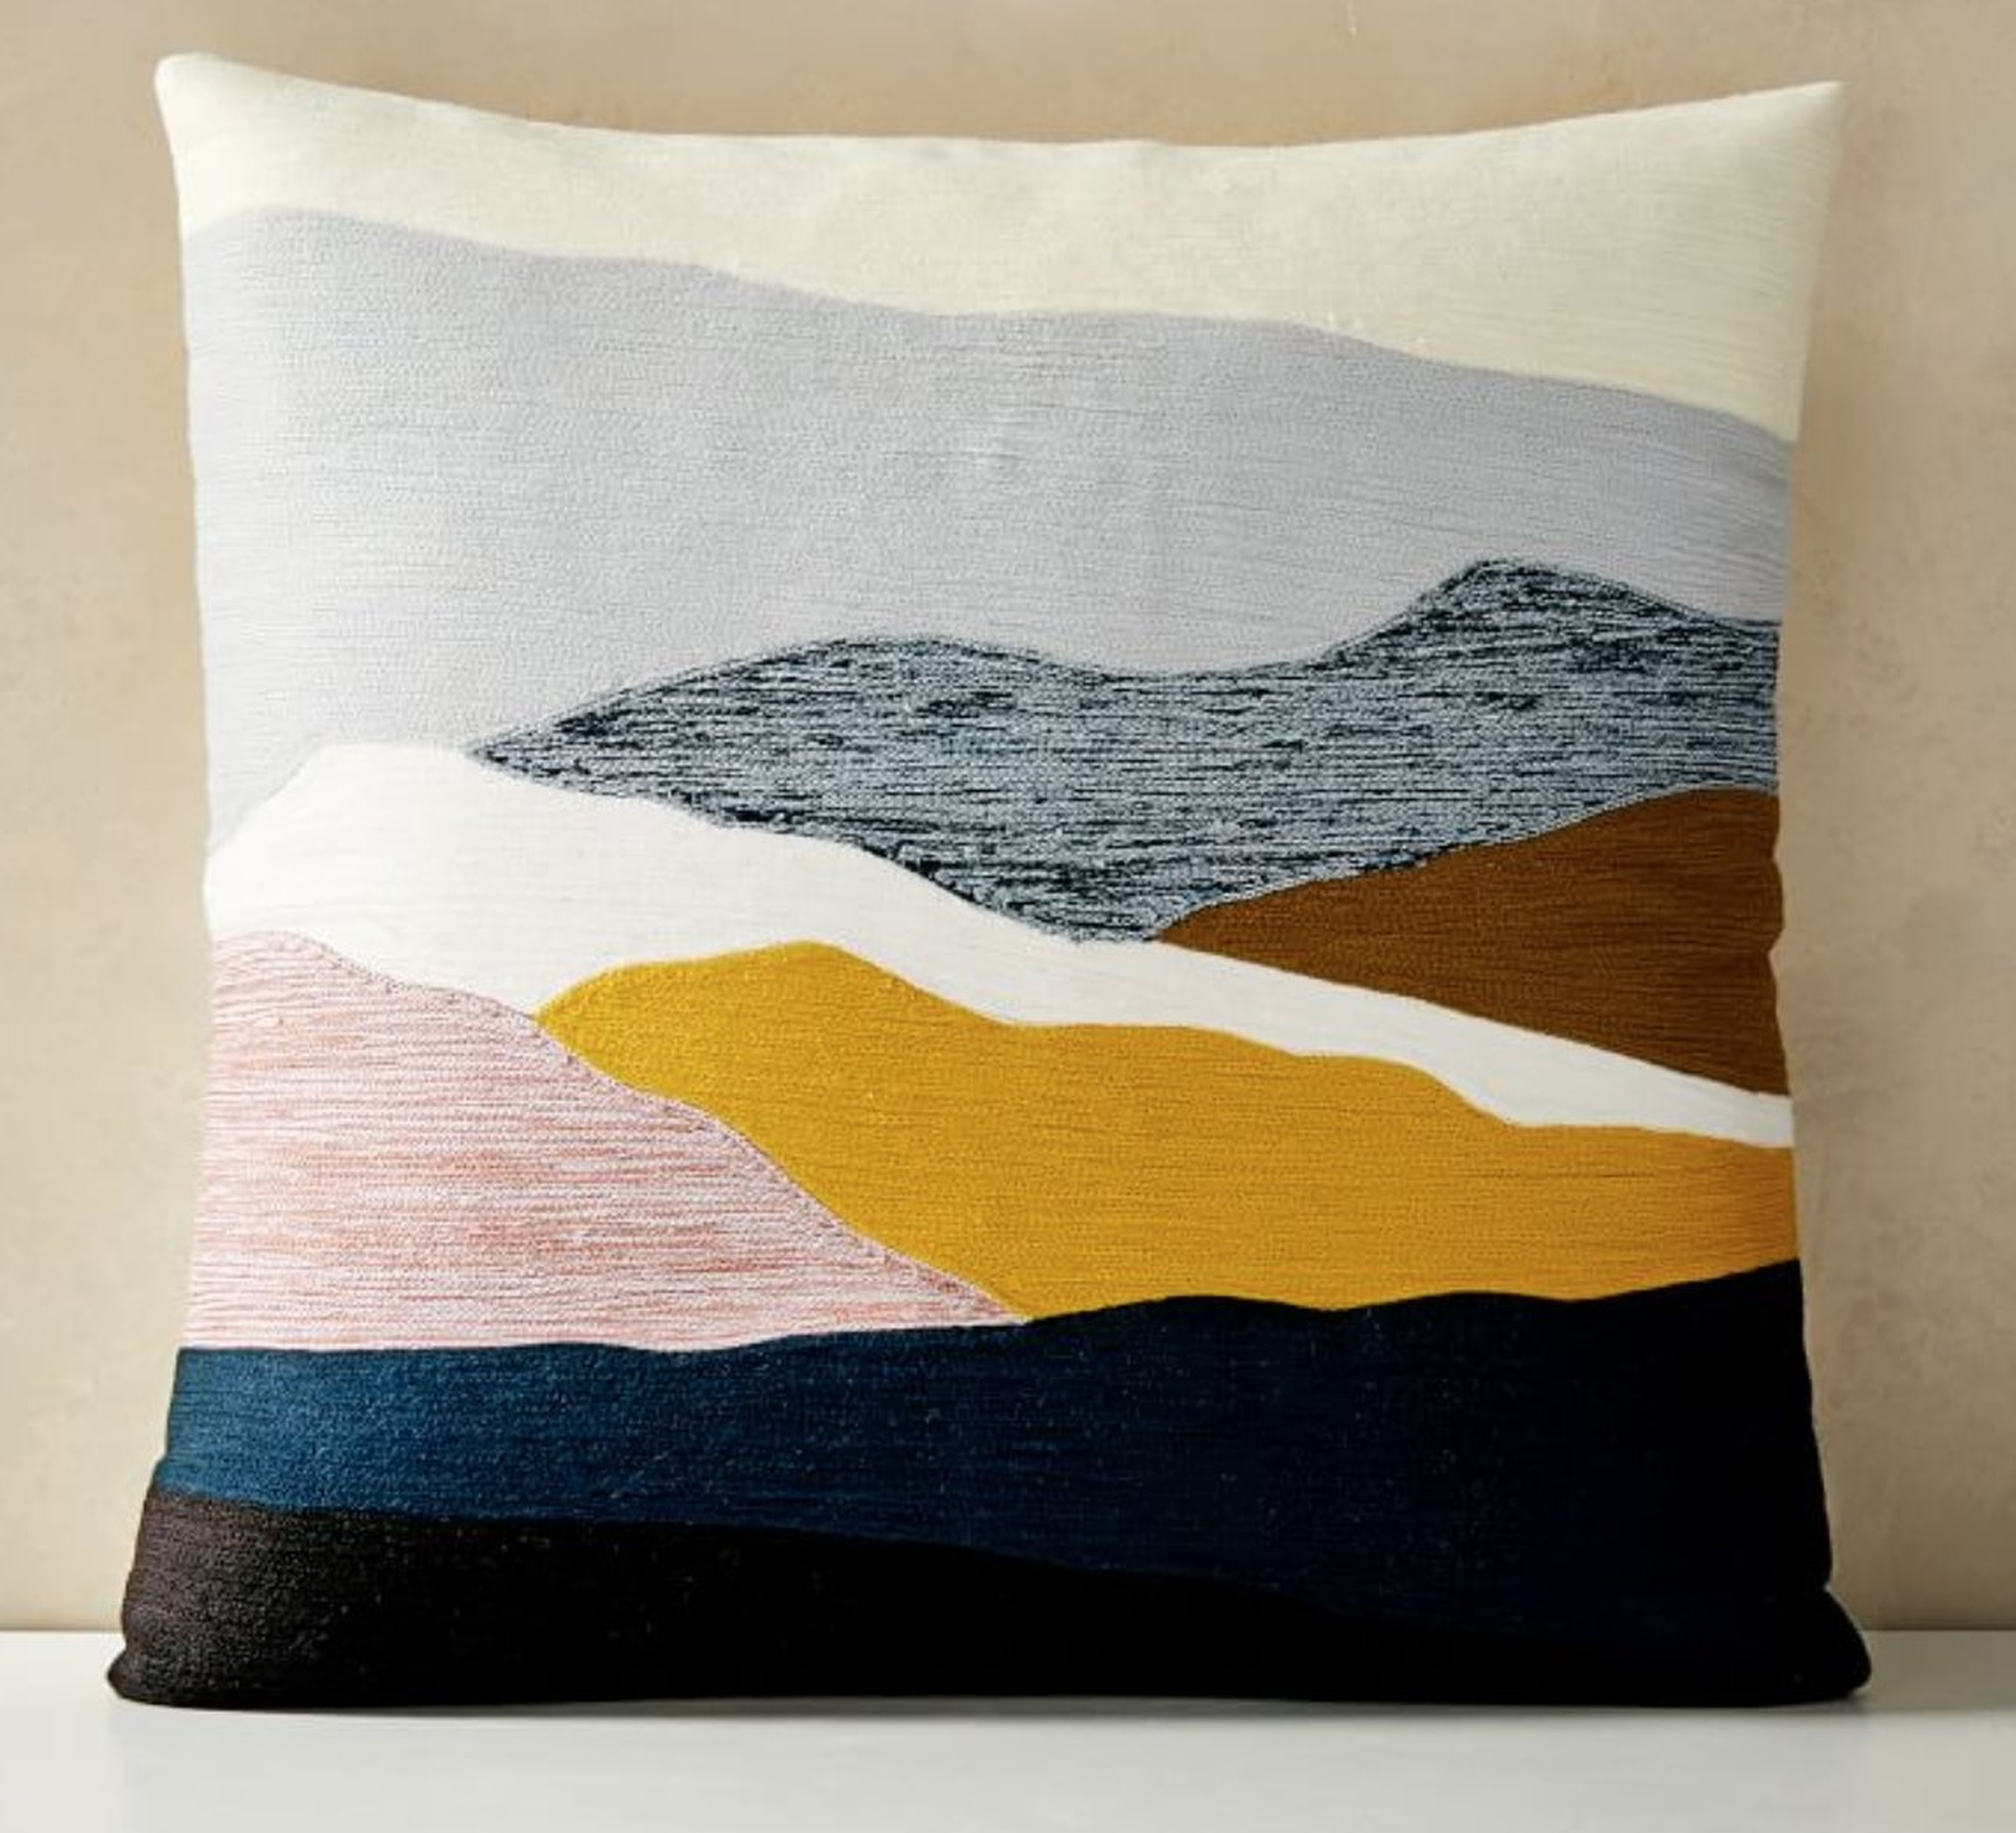 Crewel Landscape Pillow Cover, 20"x20", Desert Sunset - West Elm